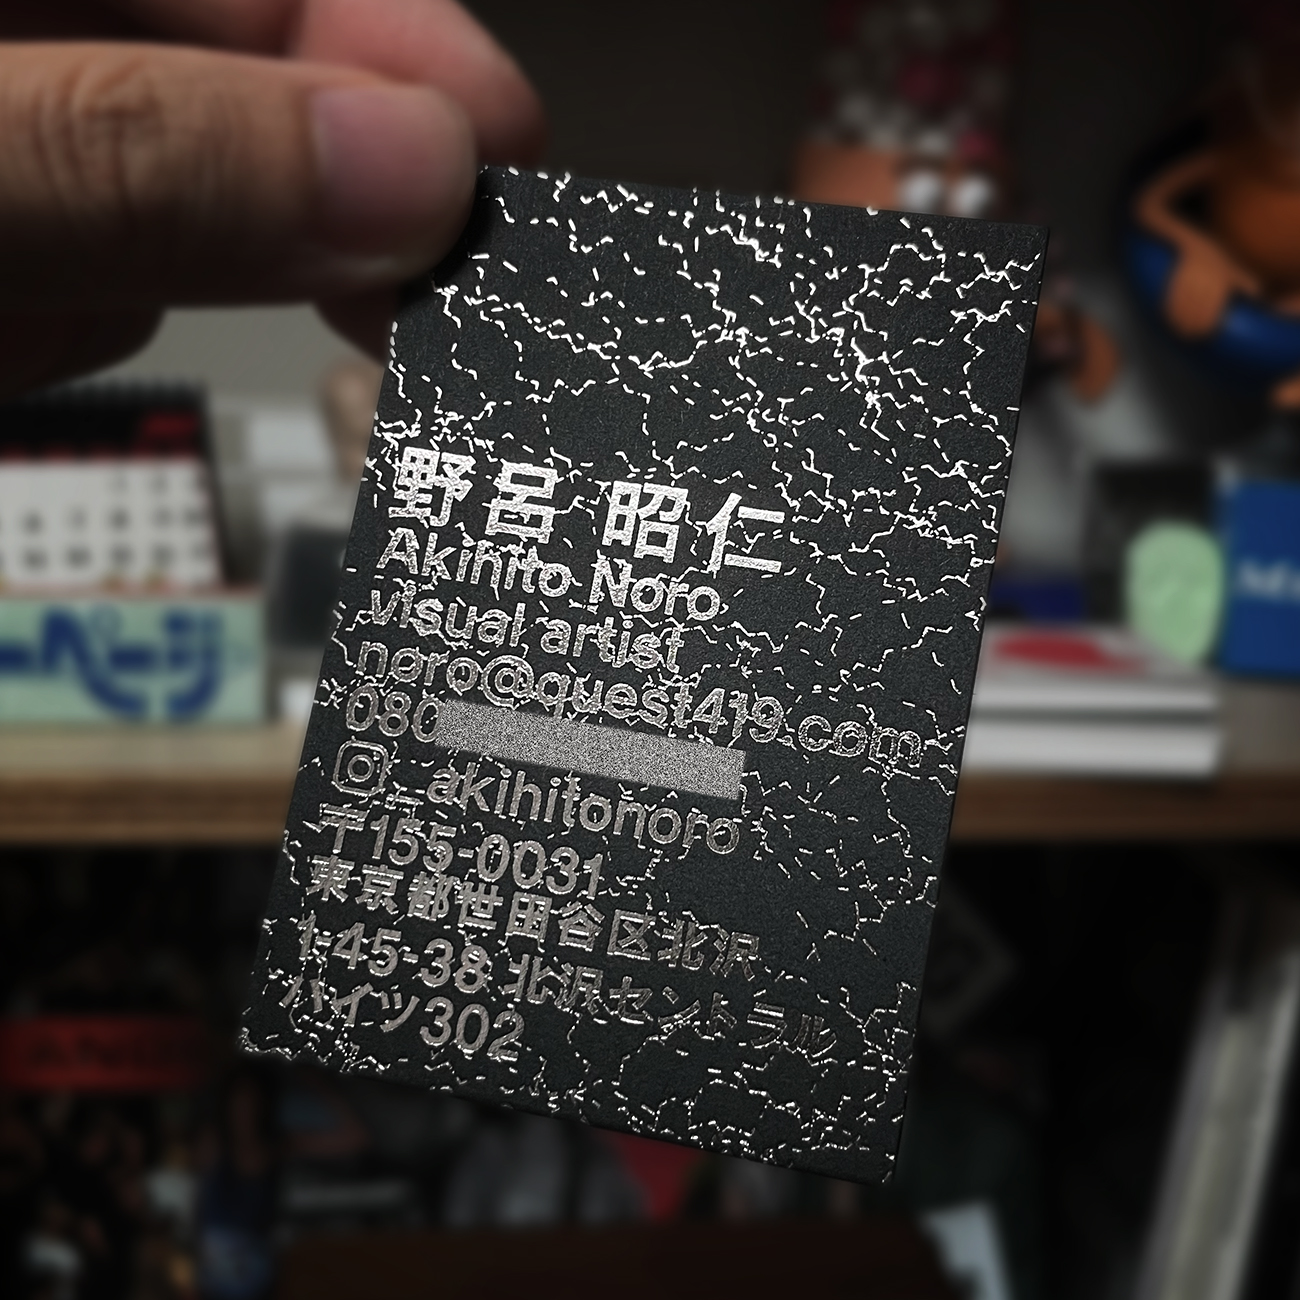 Akihito Noro | Name card